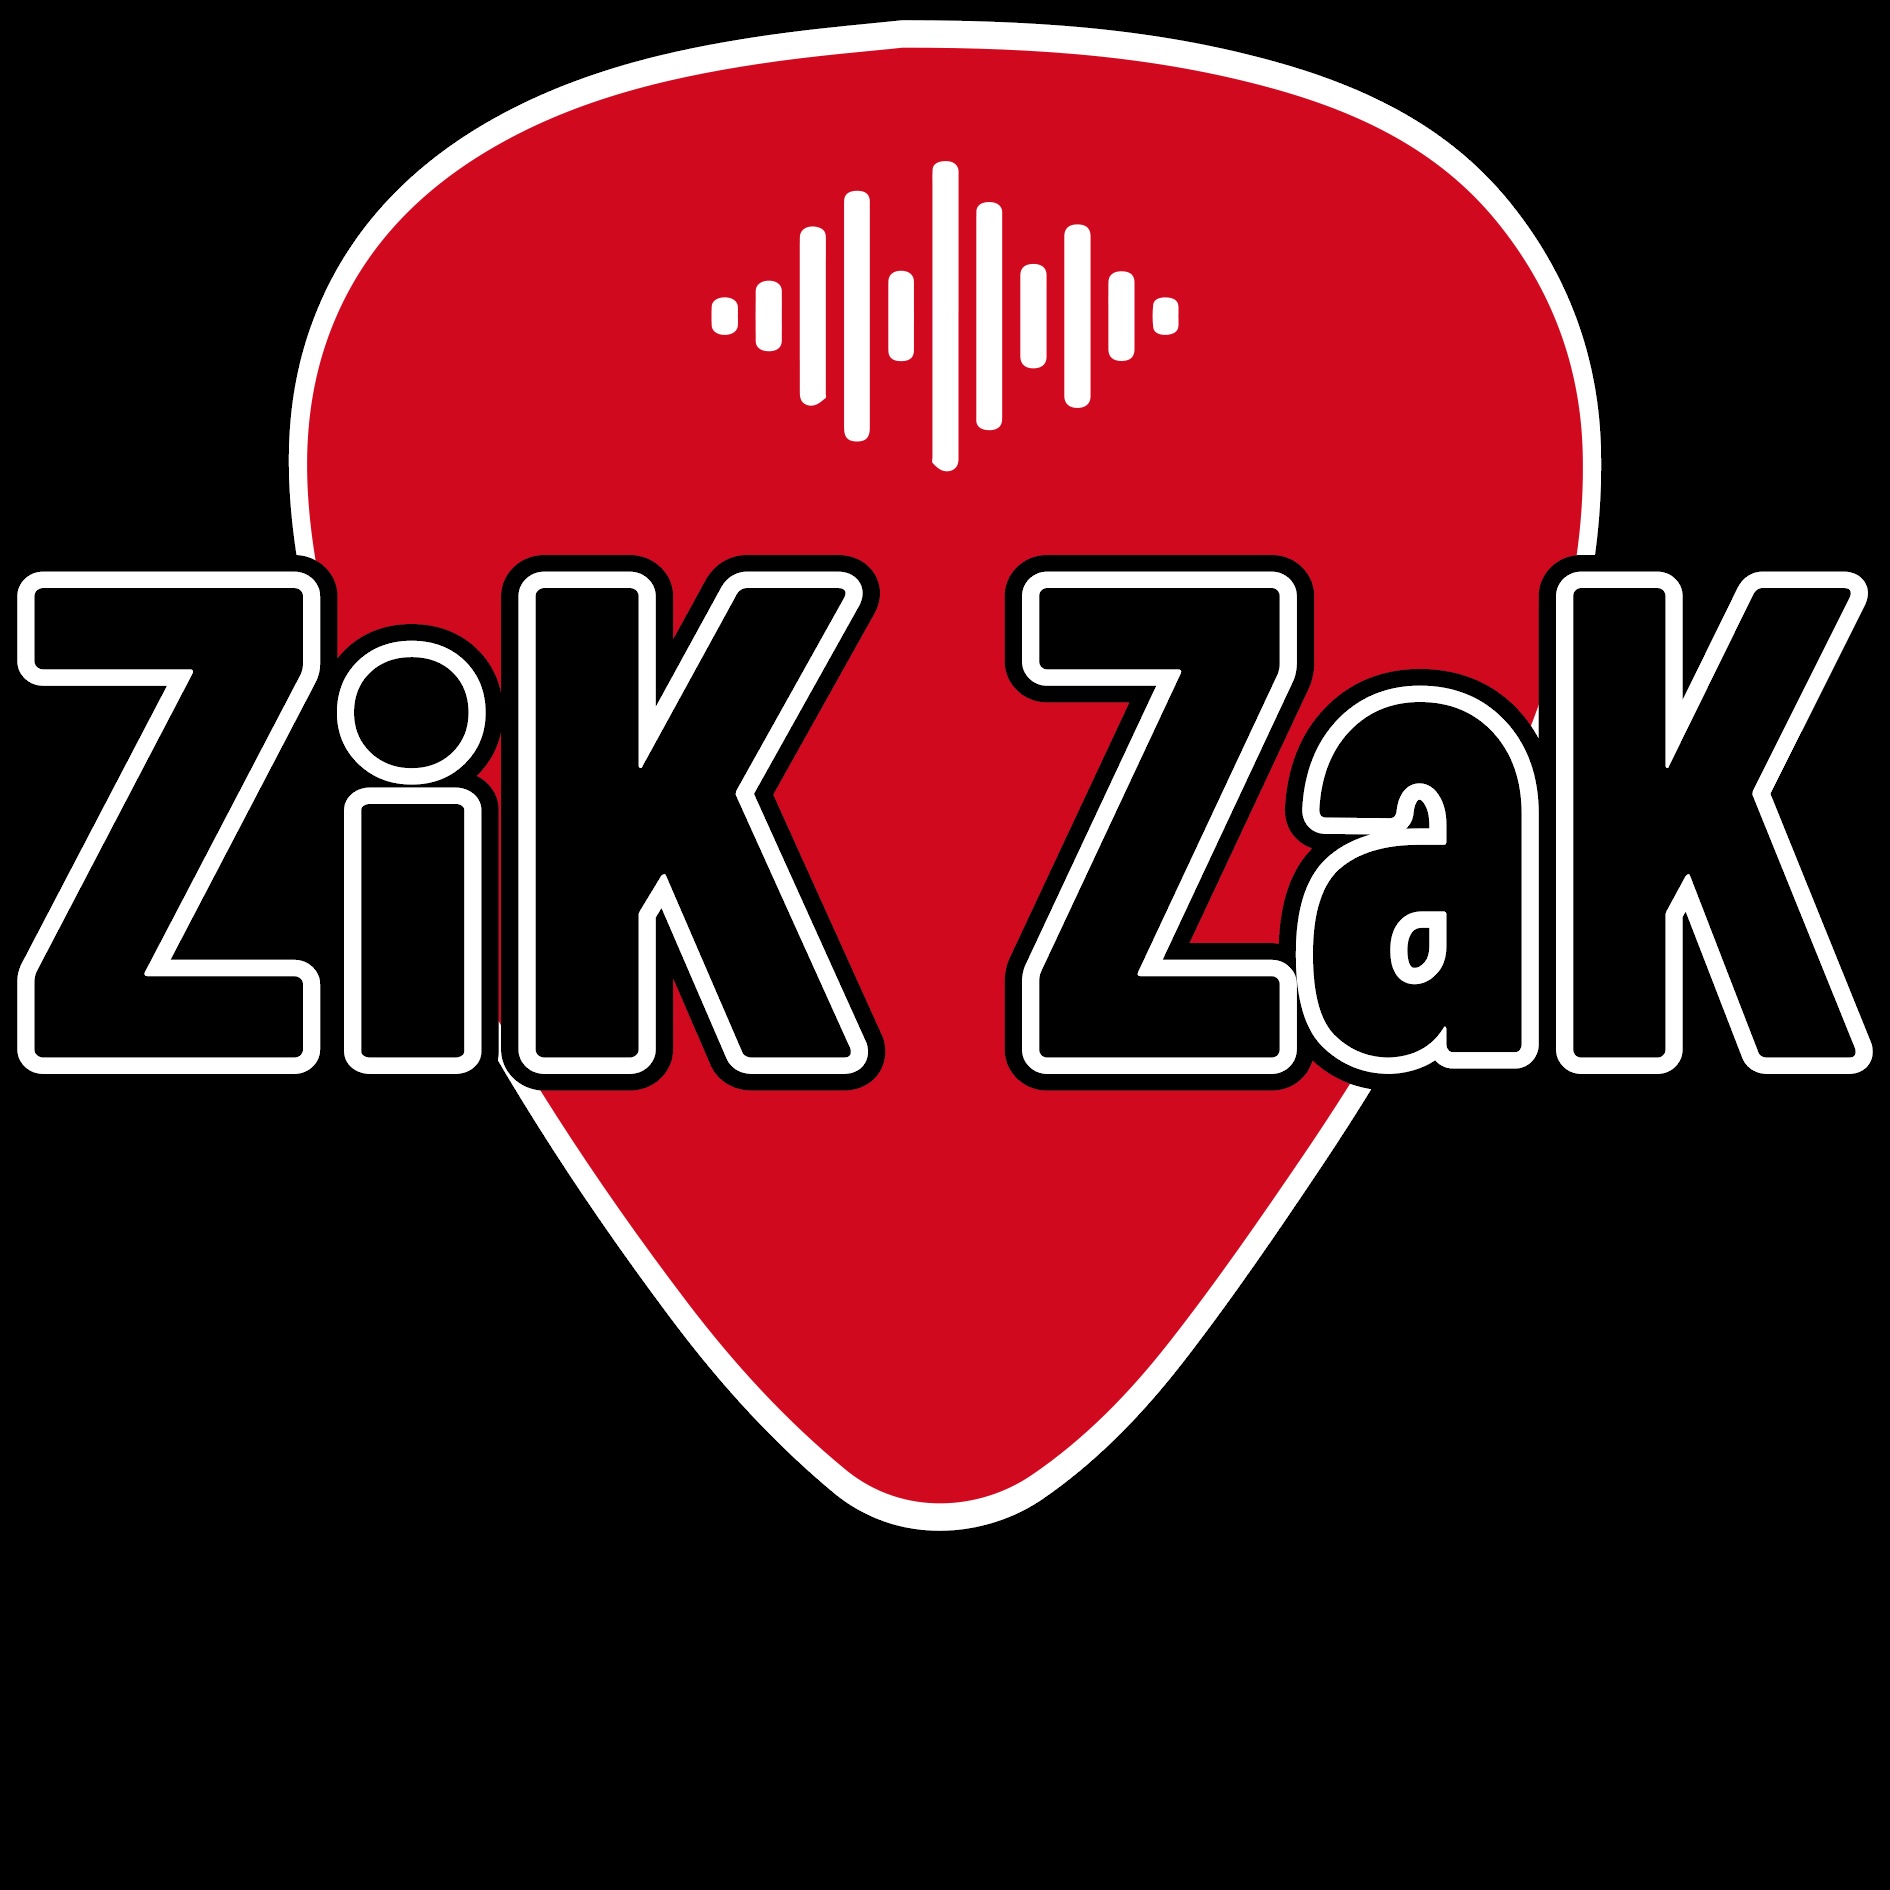 ZikZak